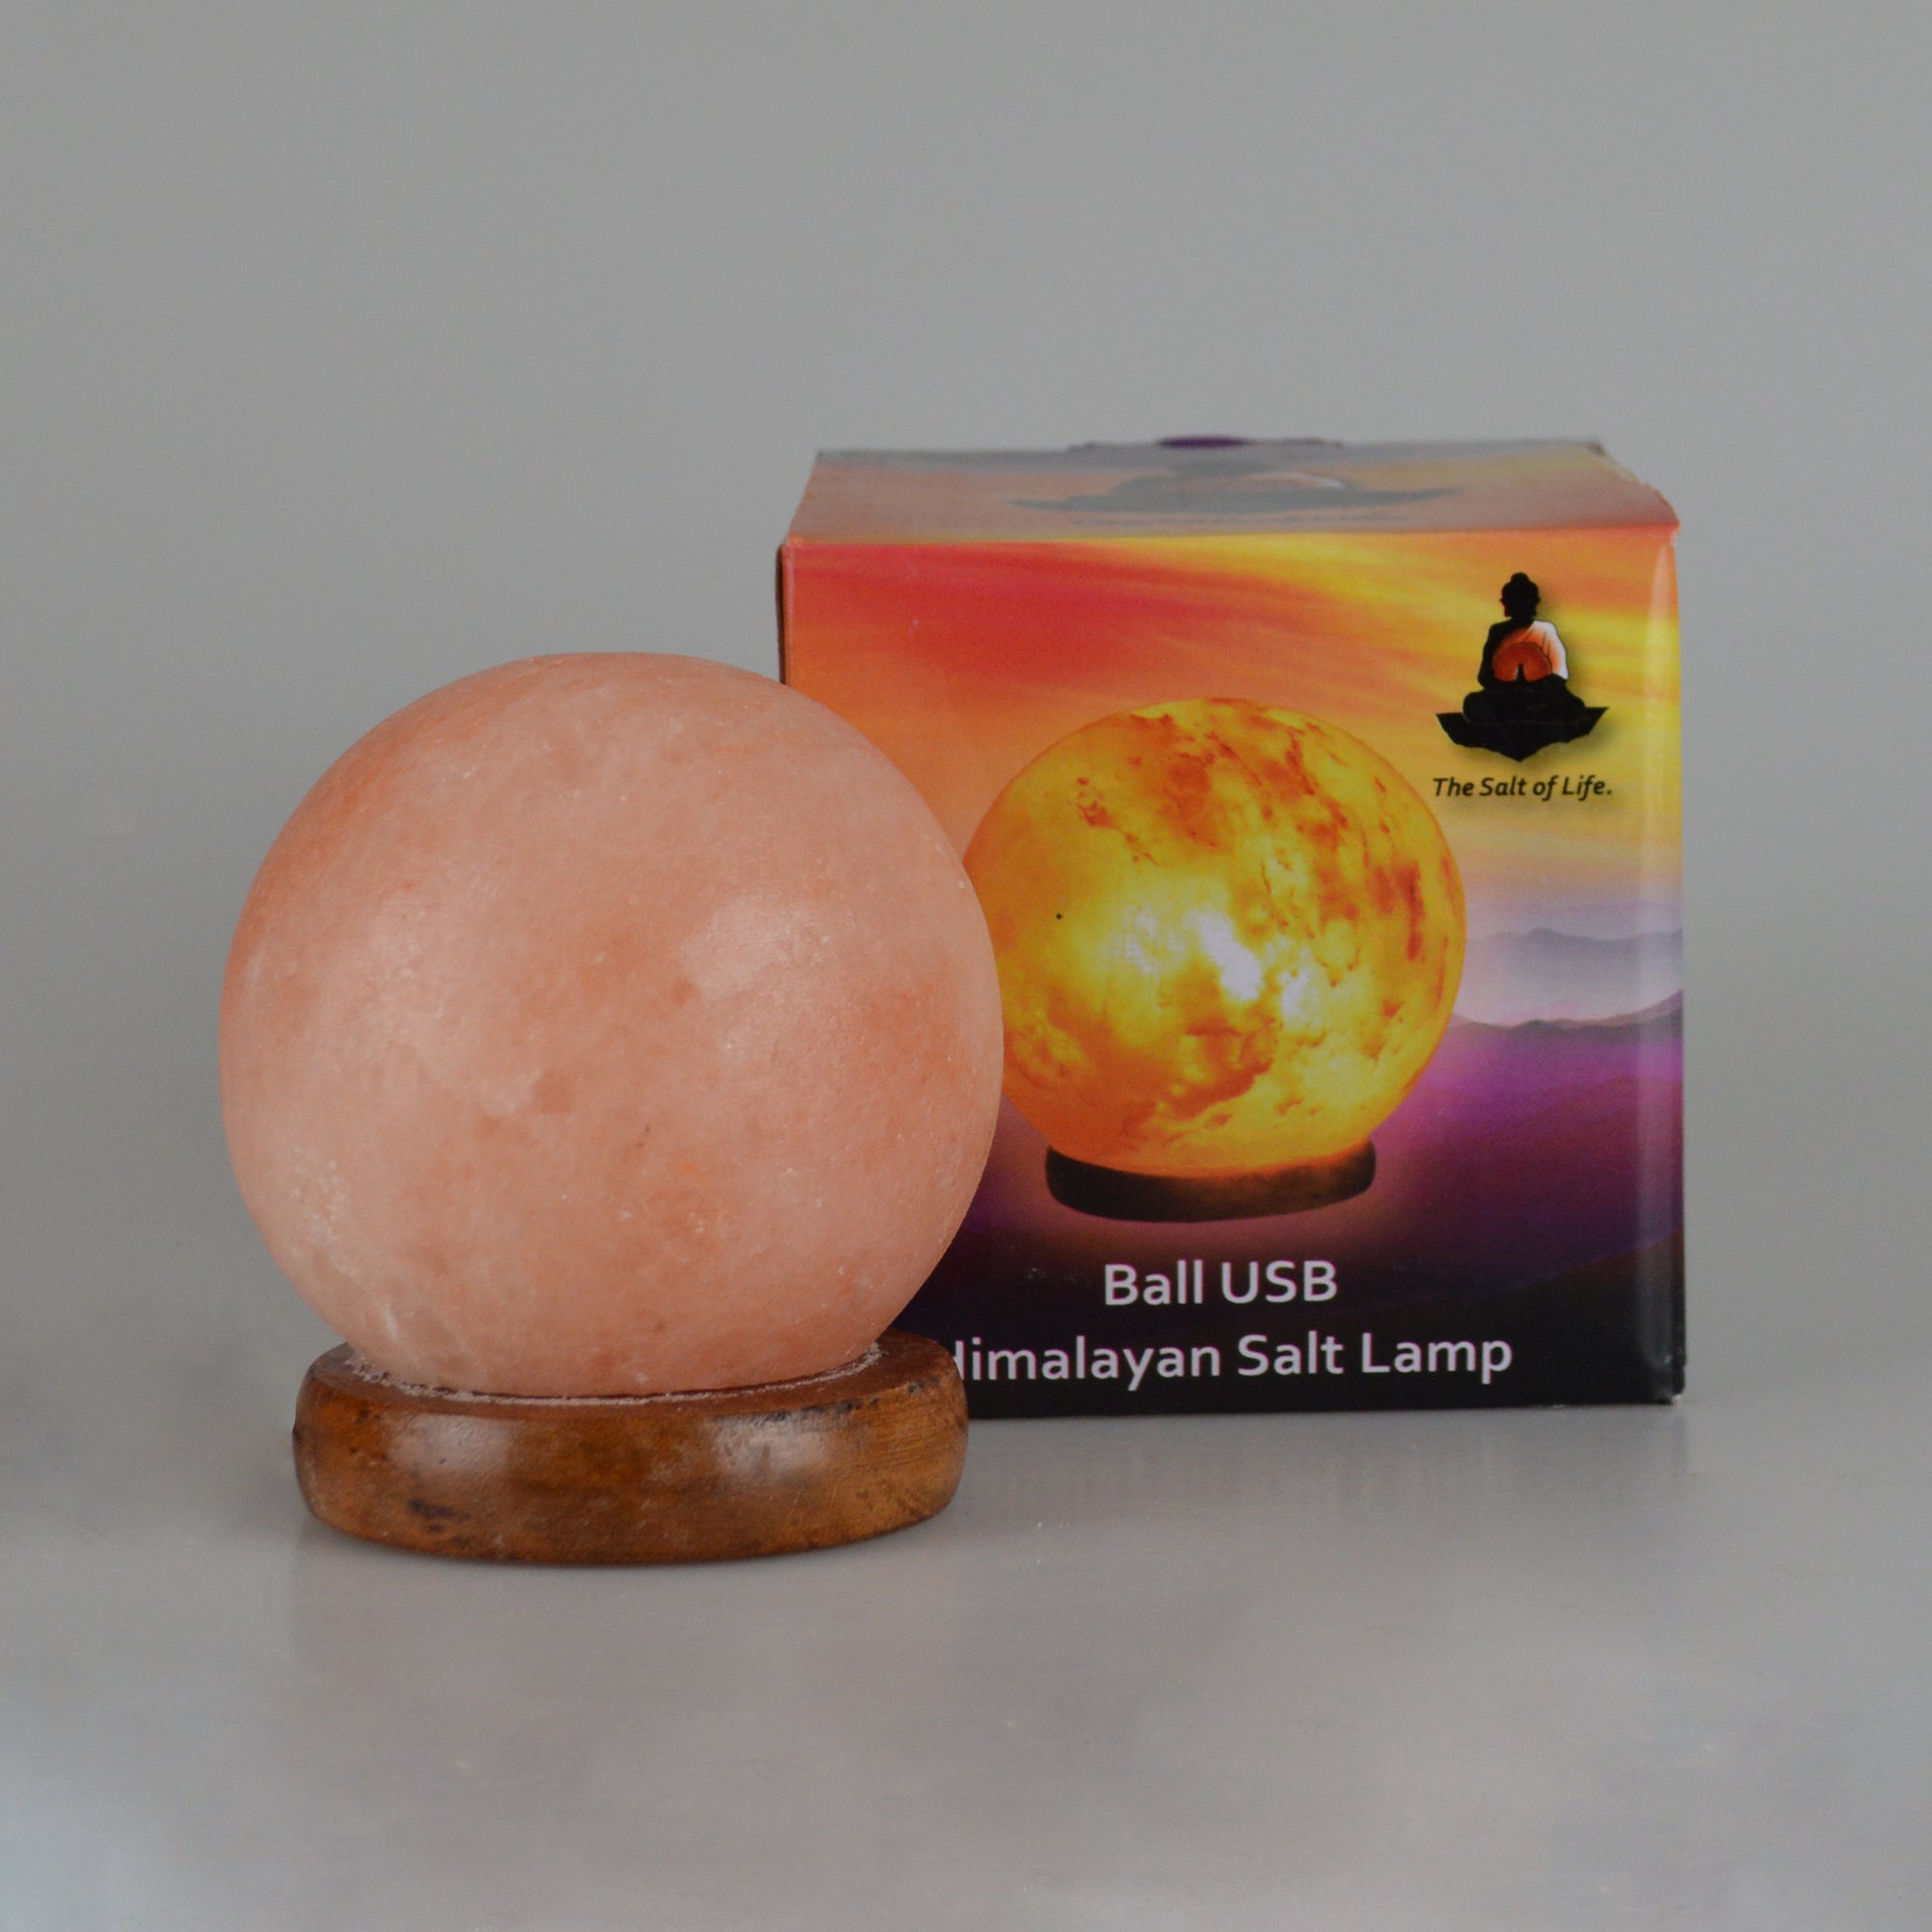 The Salt of Life - Himalayan Salt Lamp Ball USB